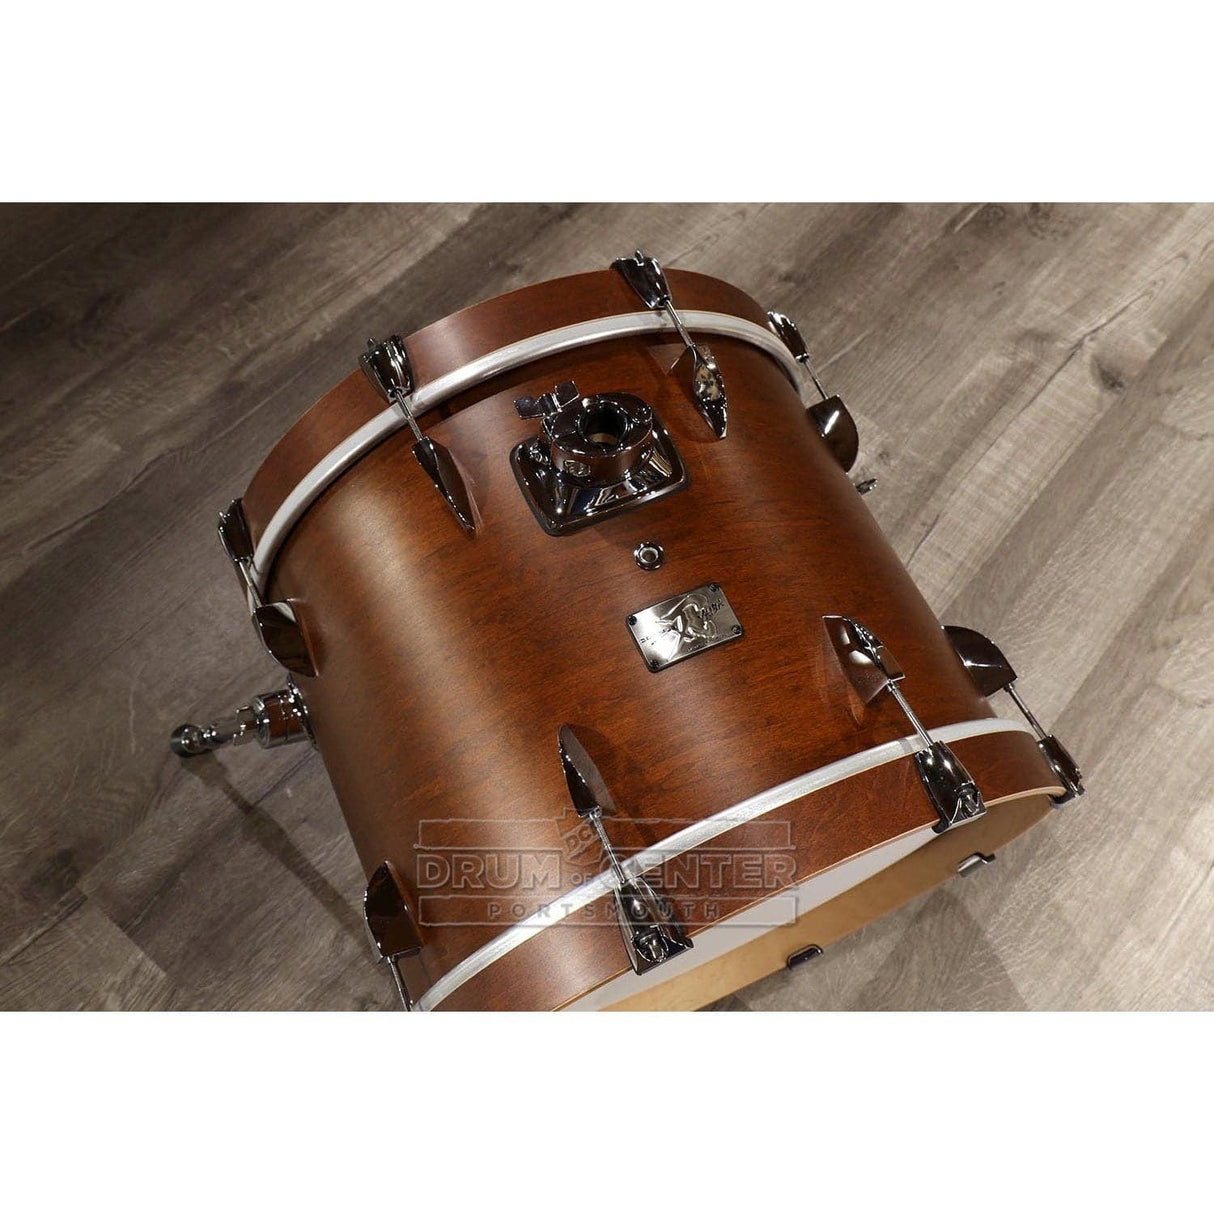 Canopus Yaiba 3pc Bop Drum Set Antique Brown Matte Lacquer